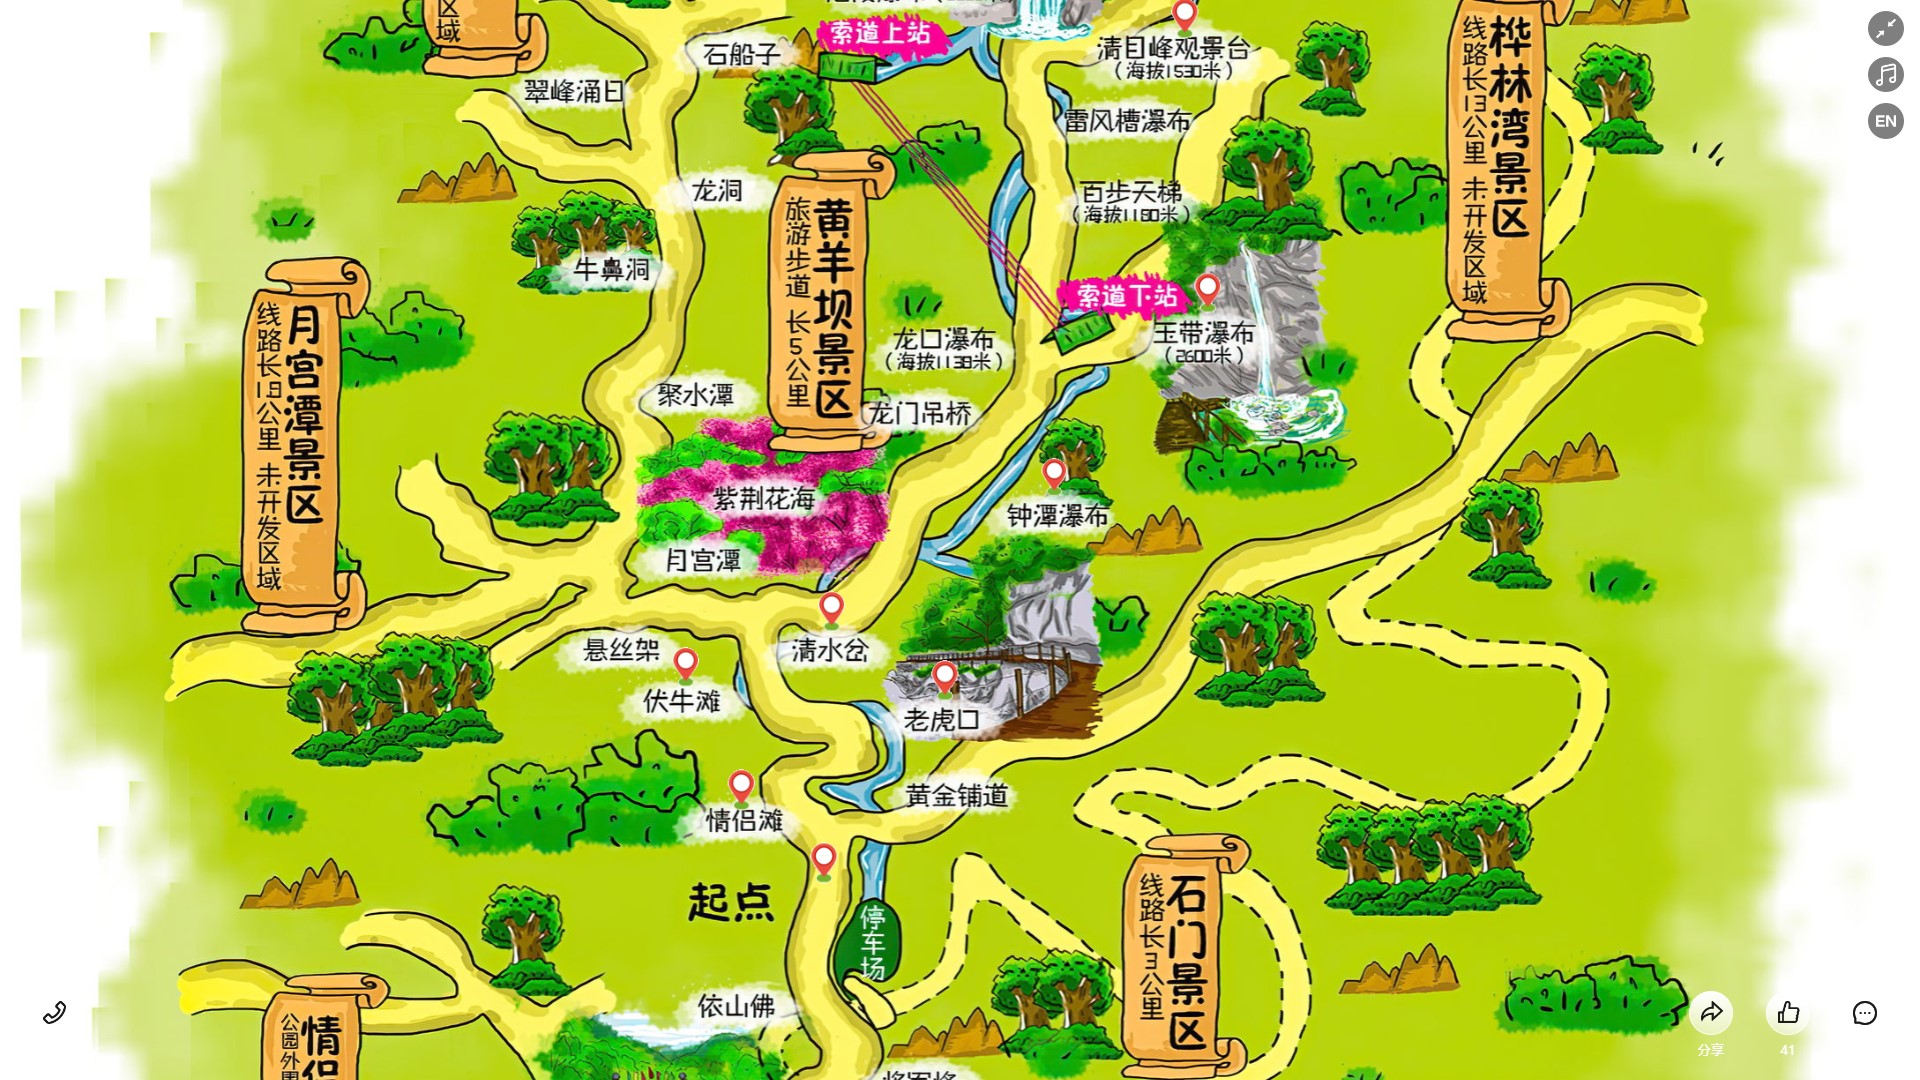 惠州景区导览系统